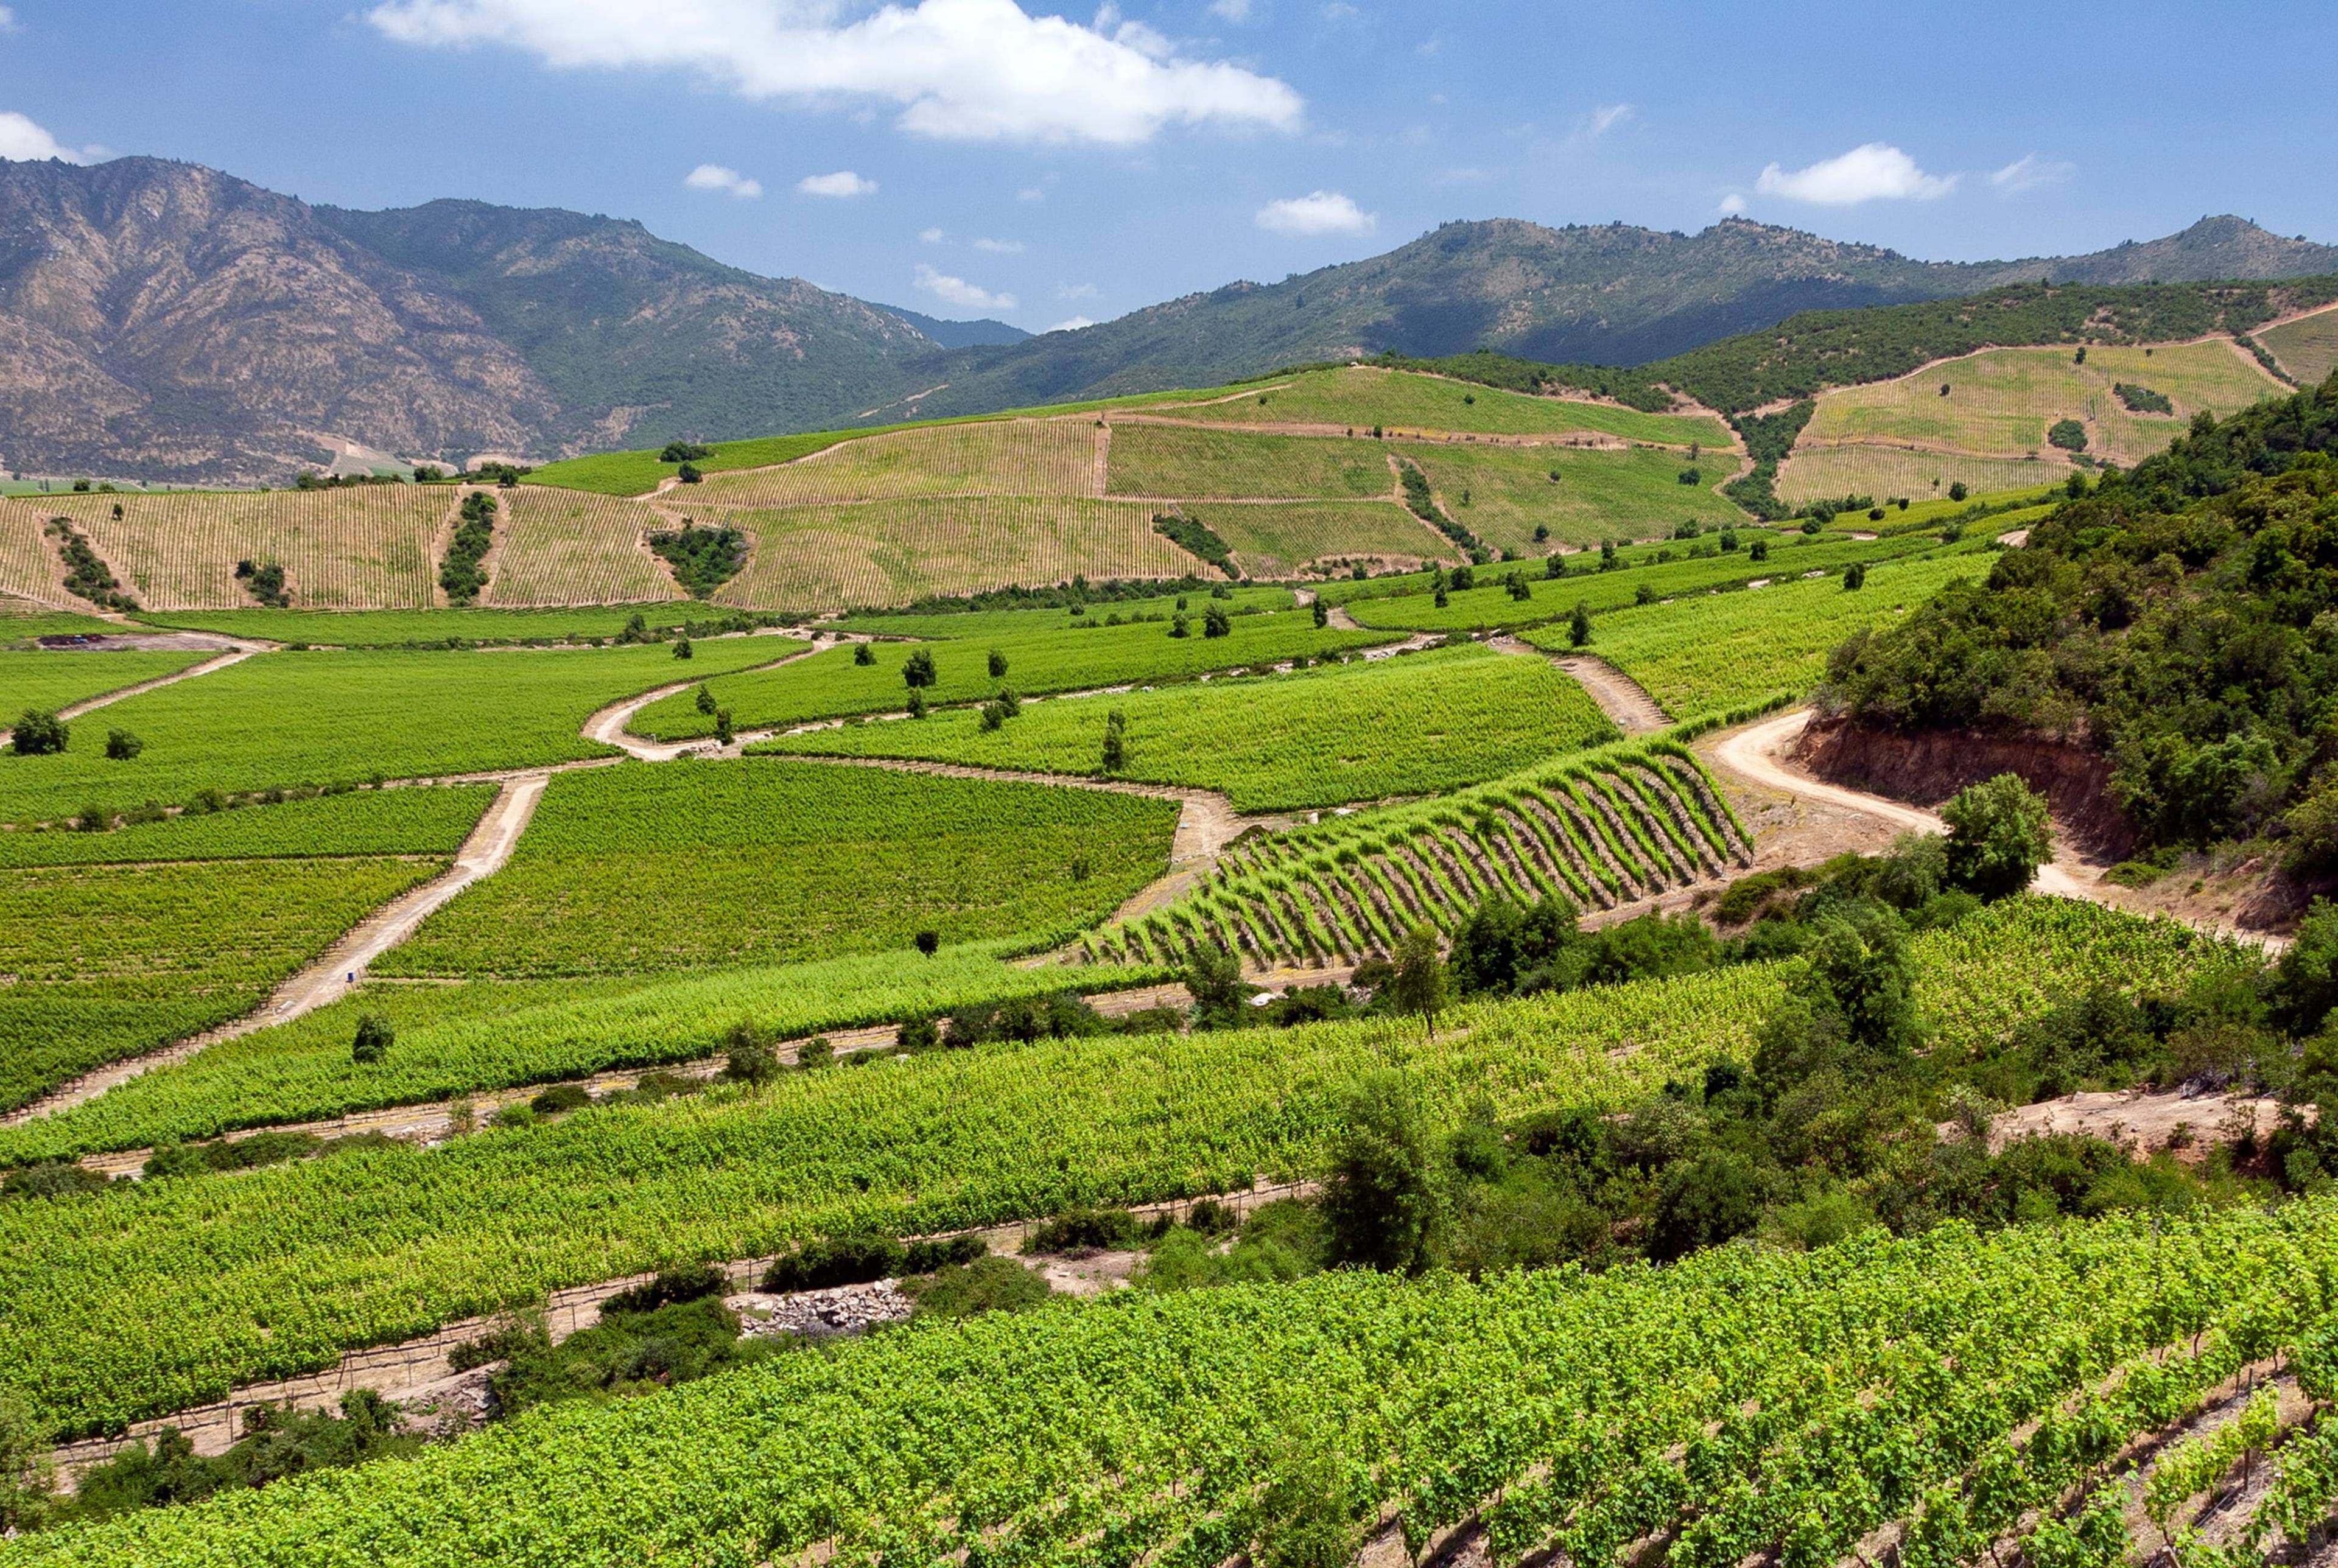 La vallée de Colchagua : Explorez le pays des vins du Chili